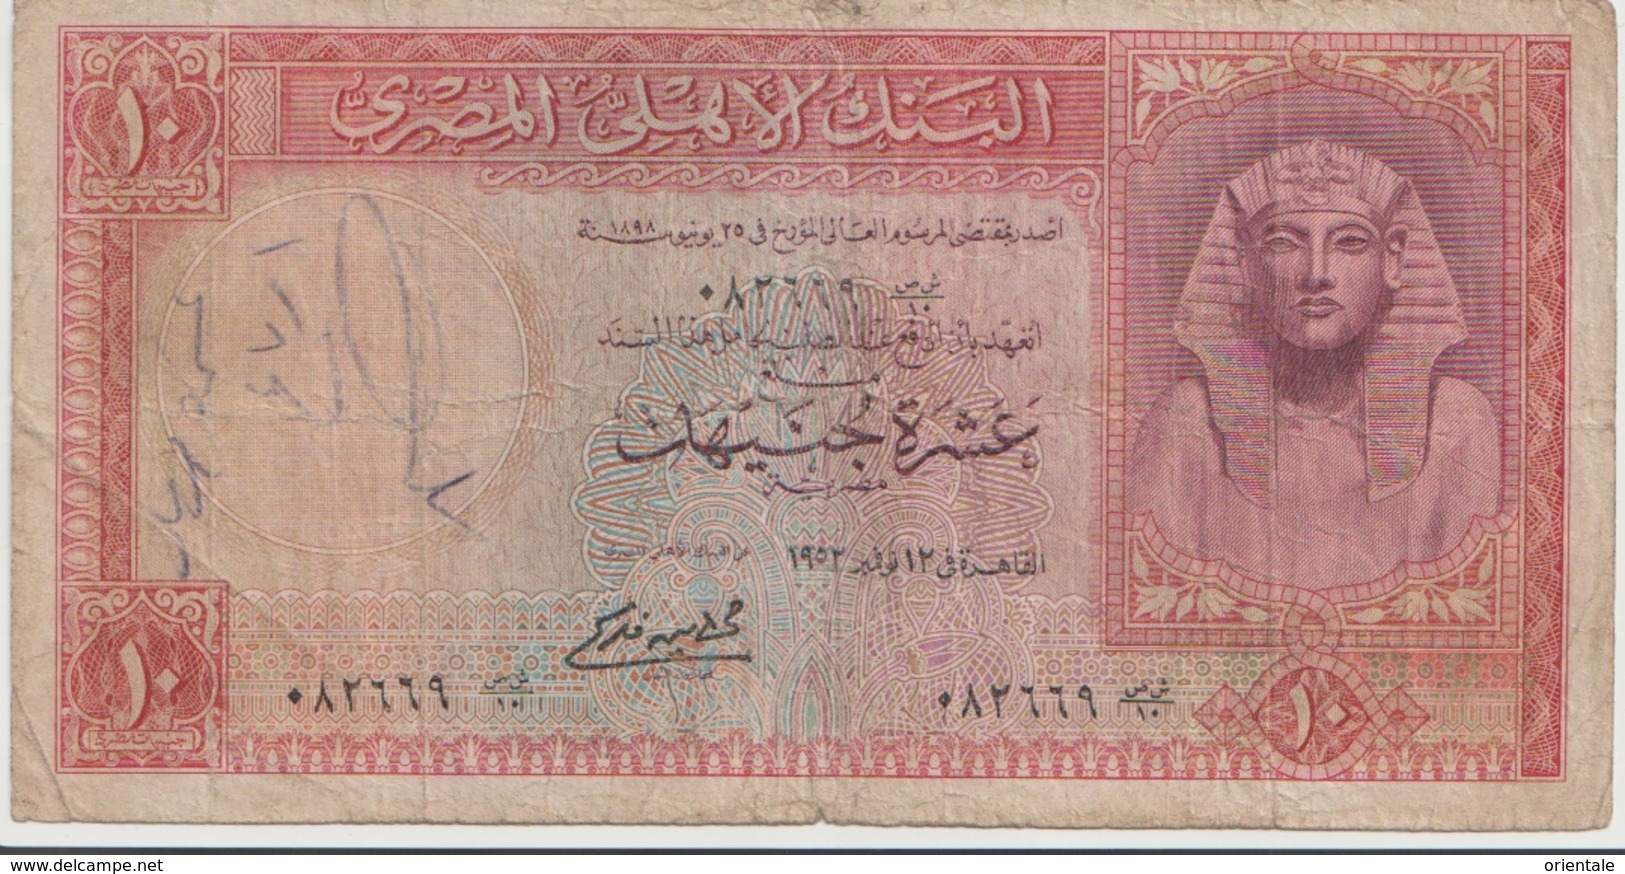 EGYPT  P. 32 10 P 1952 G - Egypt